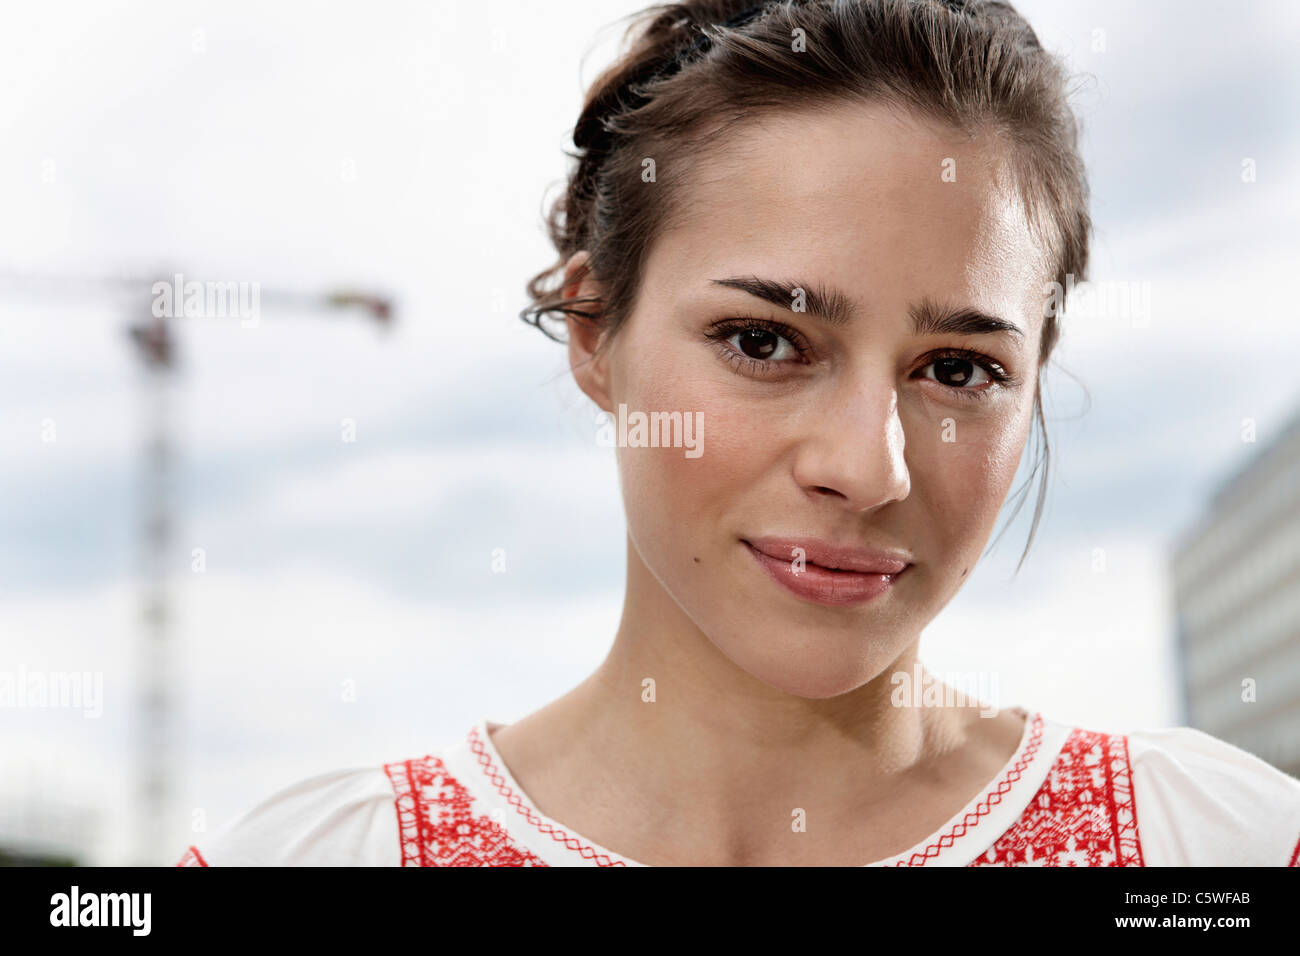 Germania, Berlino, Ritratto di una giovane donna, close-up Foto Stock